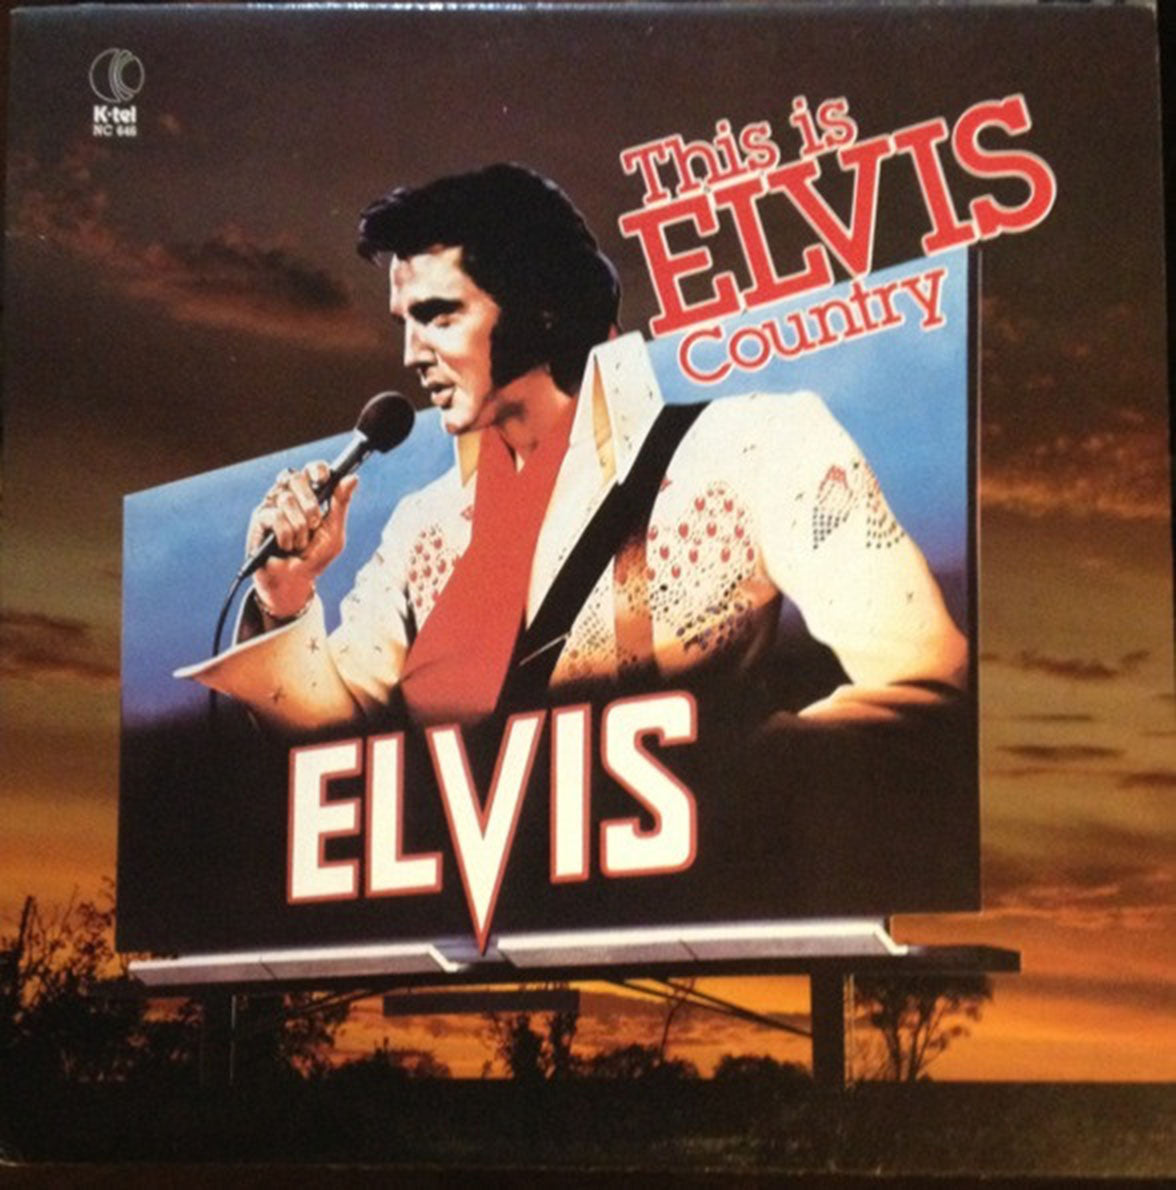 Elvis Presley – This Is Elvis Country